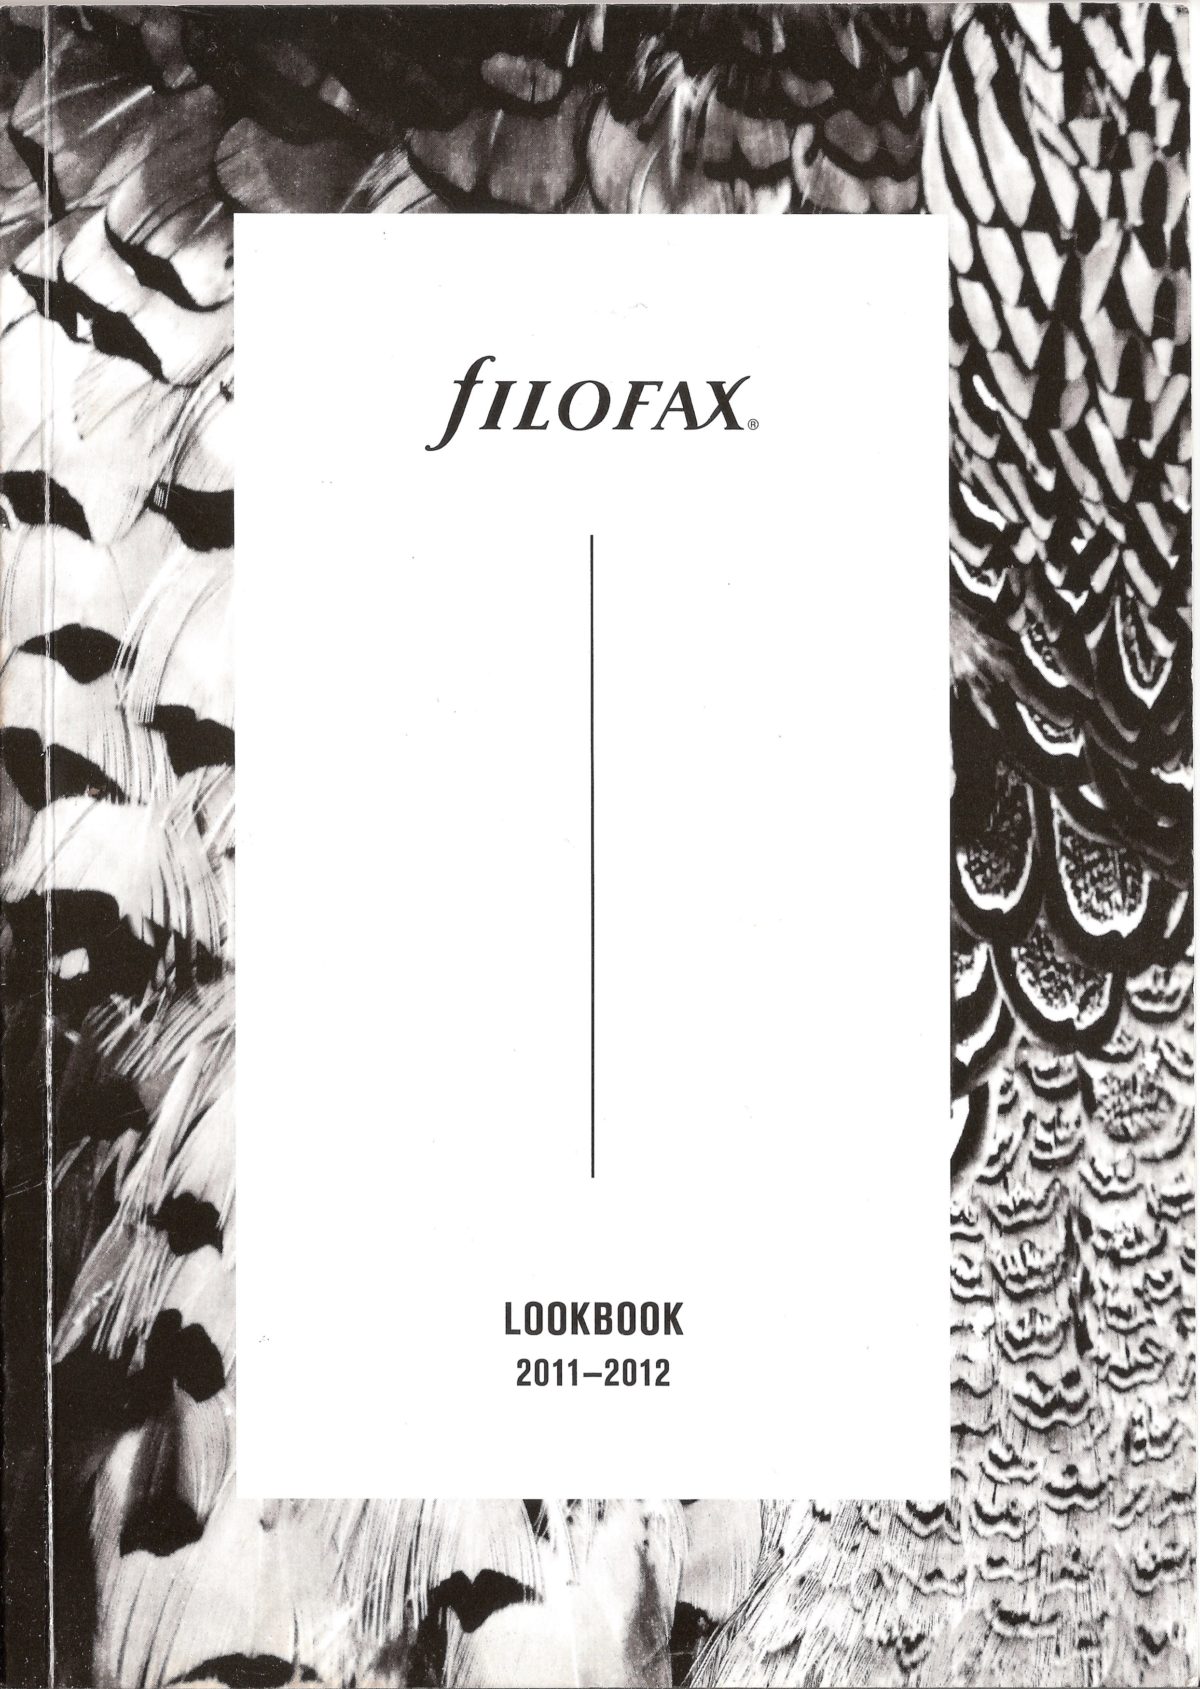 Filofax UK Look Book 2011/12